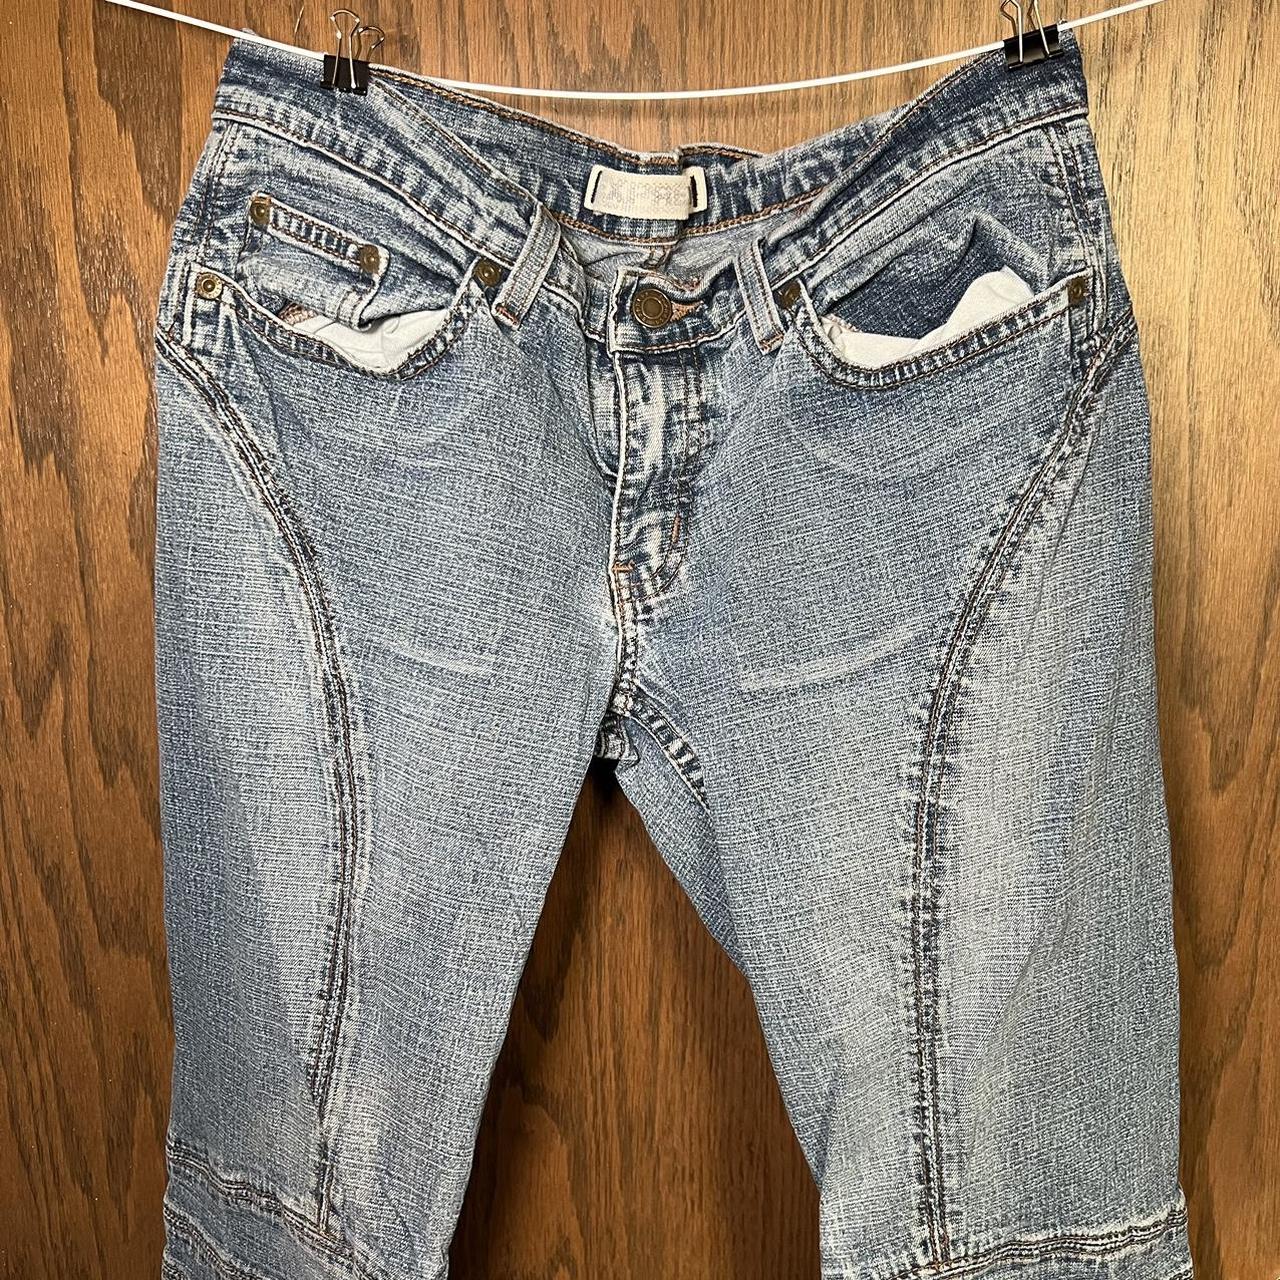 Express Precision Fit Jeans Girls Size 8 Y2K Vintage - Depop